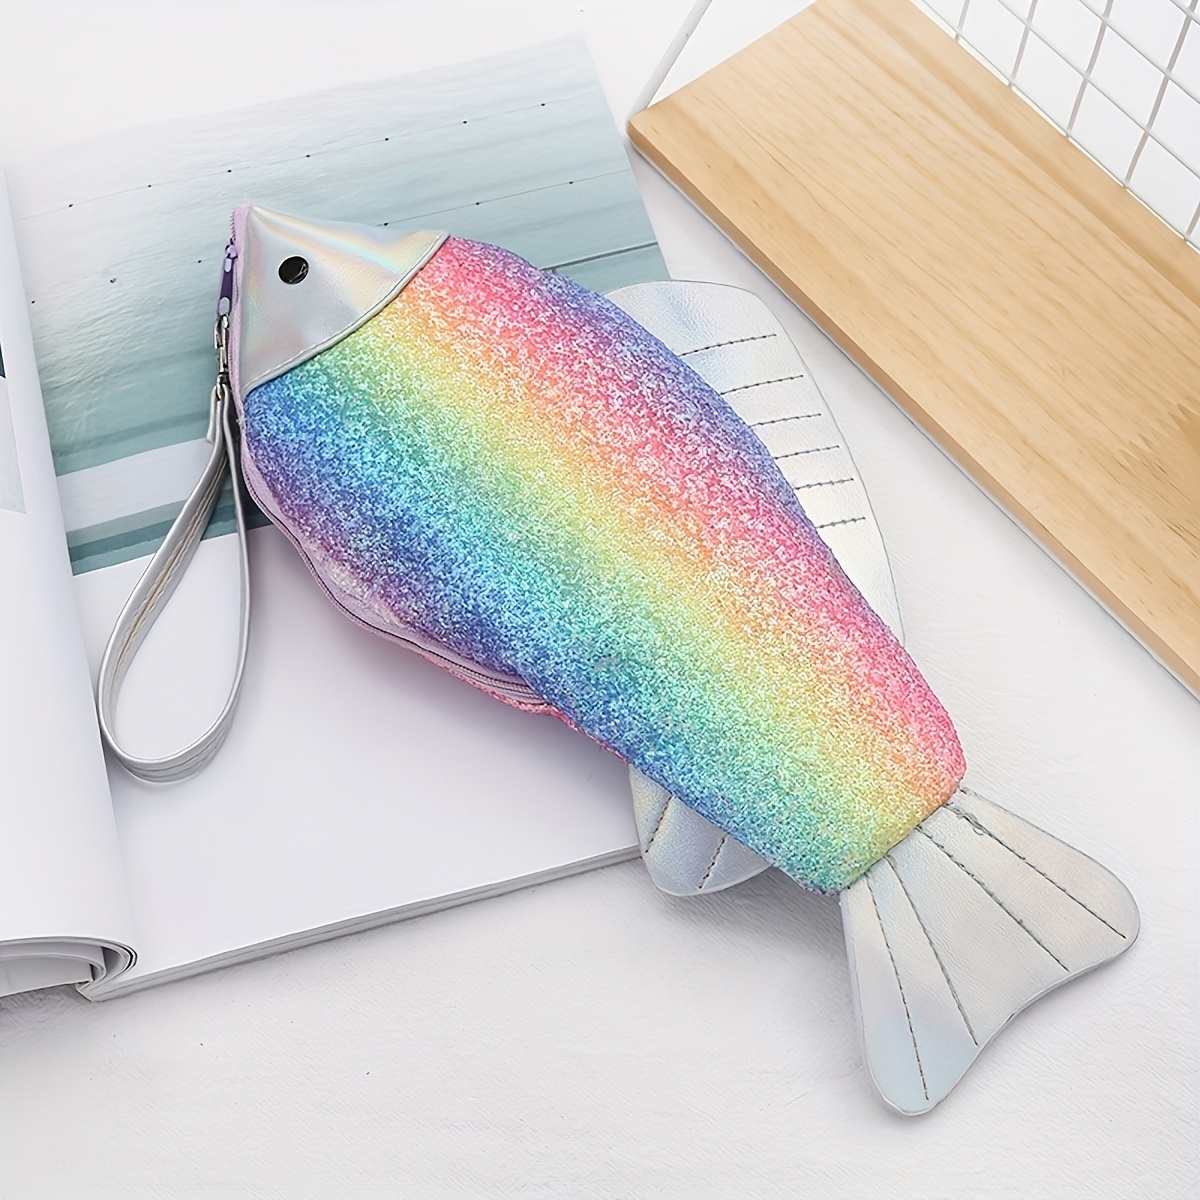 Carp Pen Bag Realistic Fish Shape Make-up Pouch Pen Pencil Case with Zipper  Makeup Pouch